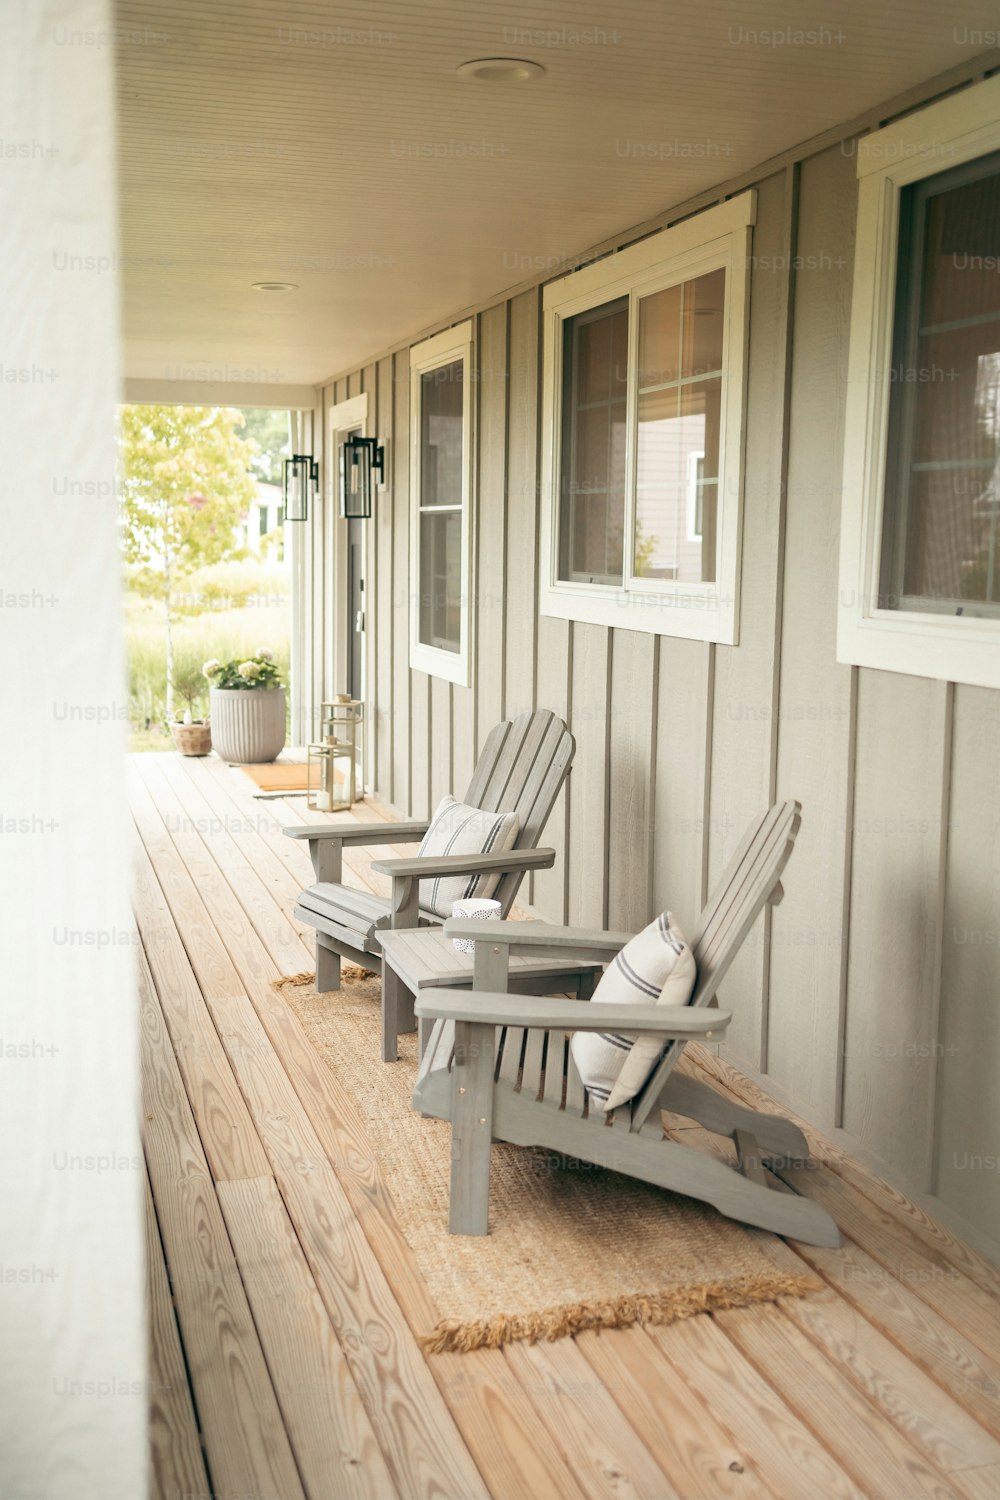 un couple de chaises de jardin assis sur une terrasse en bois